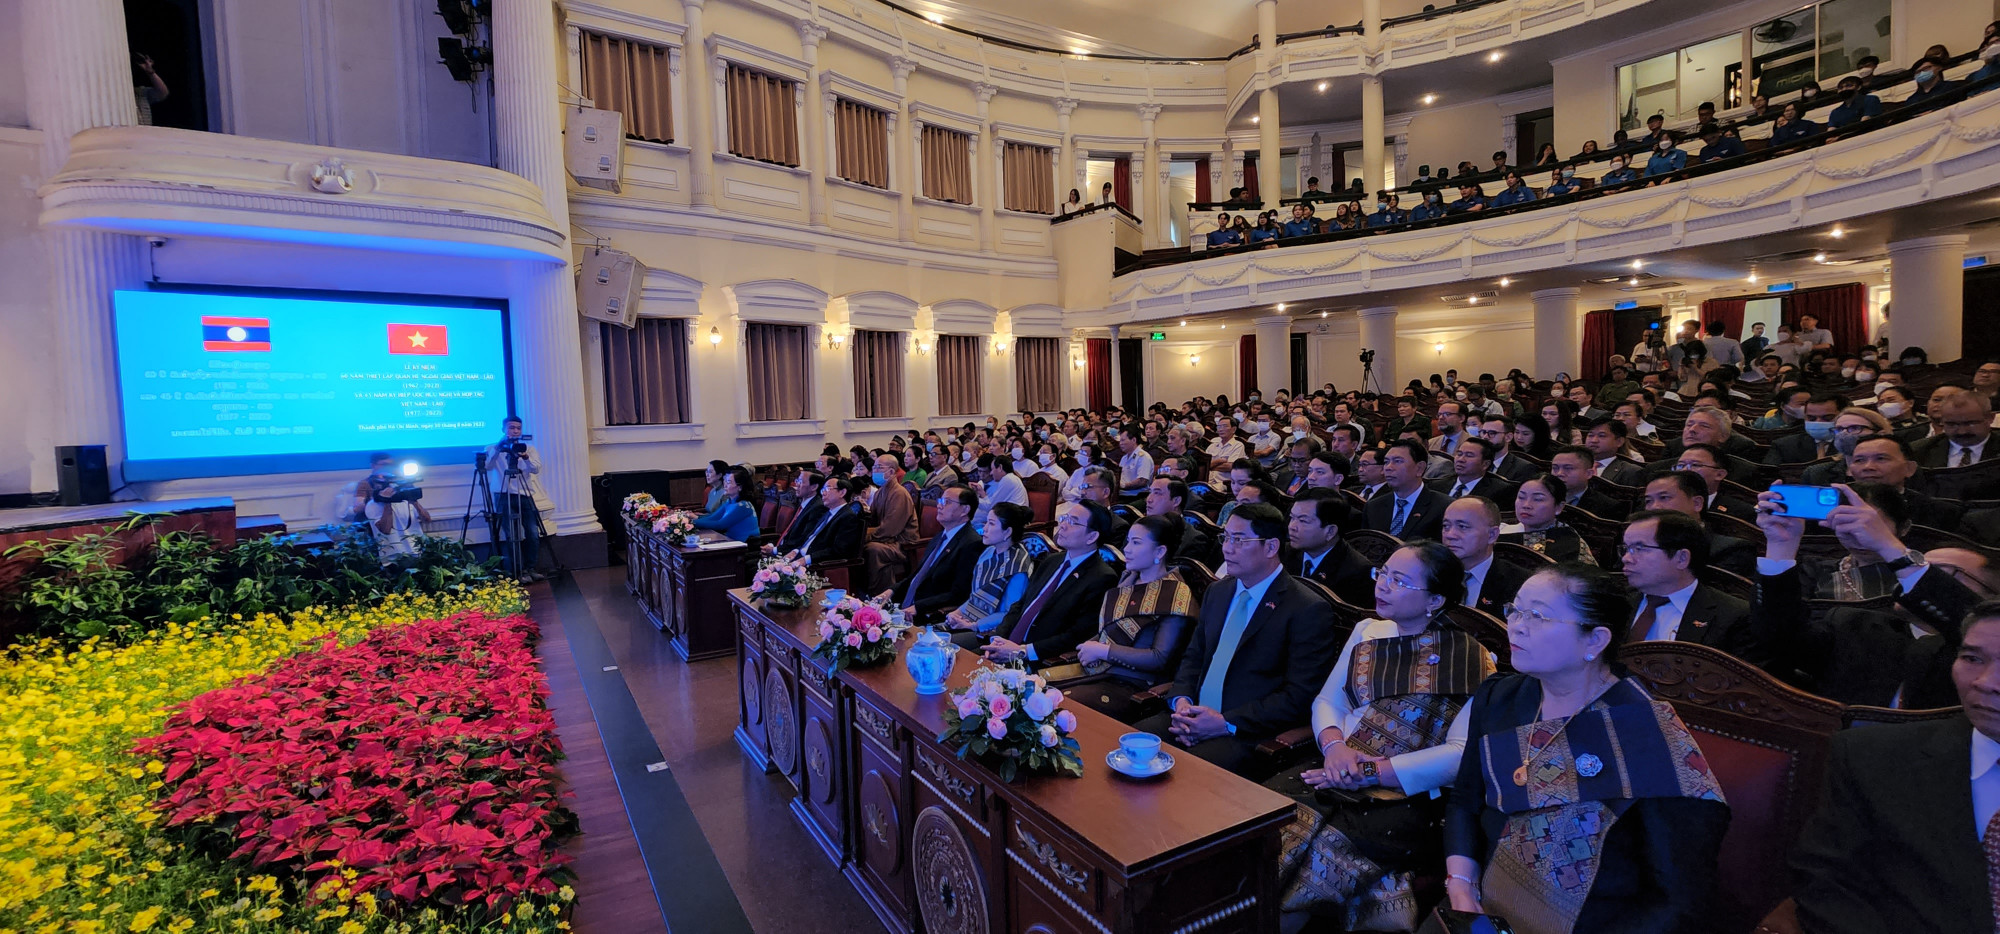 Hàng trăm đại biểu và các bạn thanh niên có mặt tại Nhà hát Thành phố để tham dự lễ kỷ niệm 60 năm quan hệ ngoại giao Việt Nam - lào